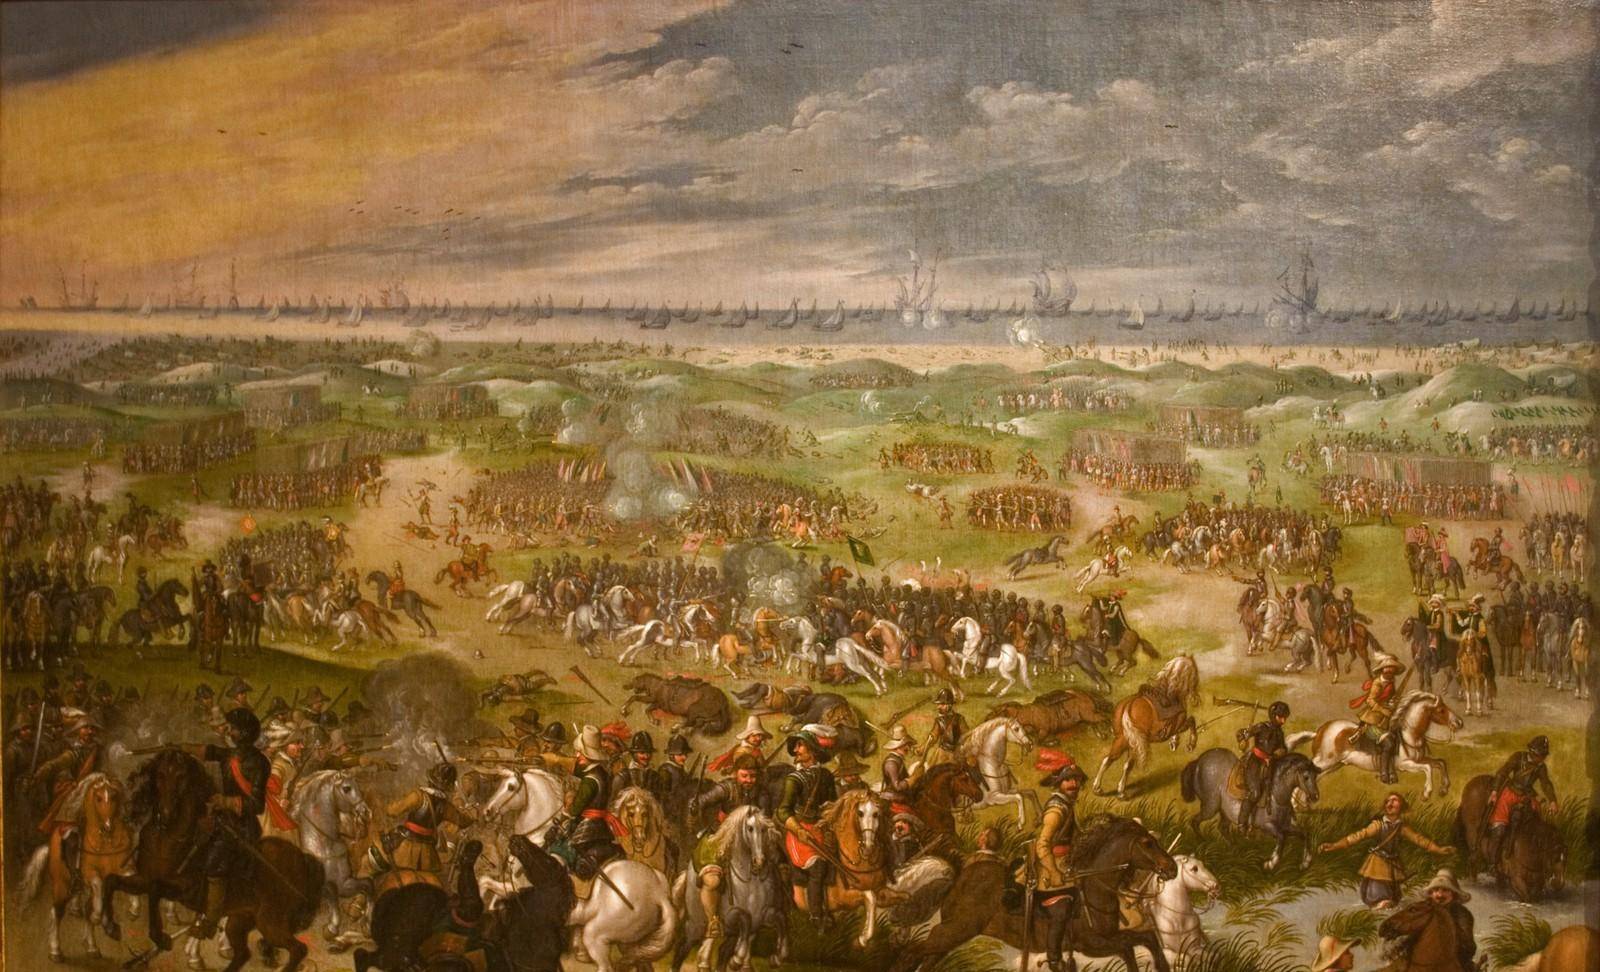 勃兰登堡联统条顿事件图片